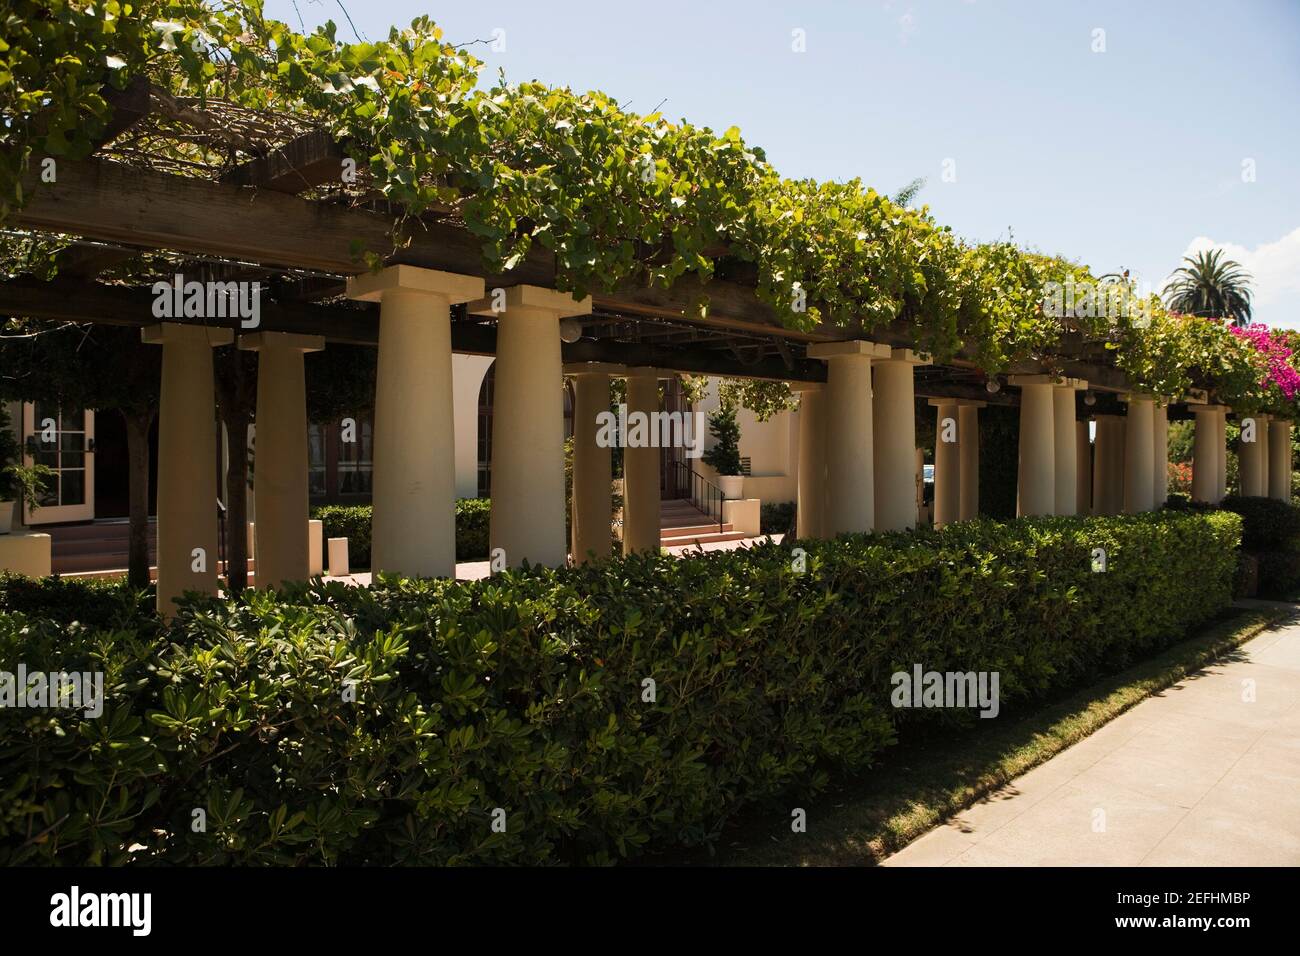 Säulengang in einem Gebäude im spanischen Stil, La Jolla, San Diego, Kalifornien, USA Stockfoto